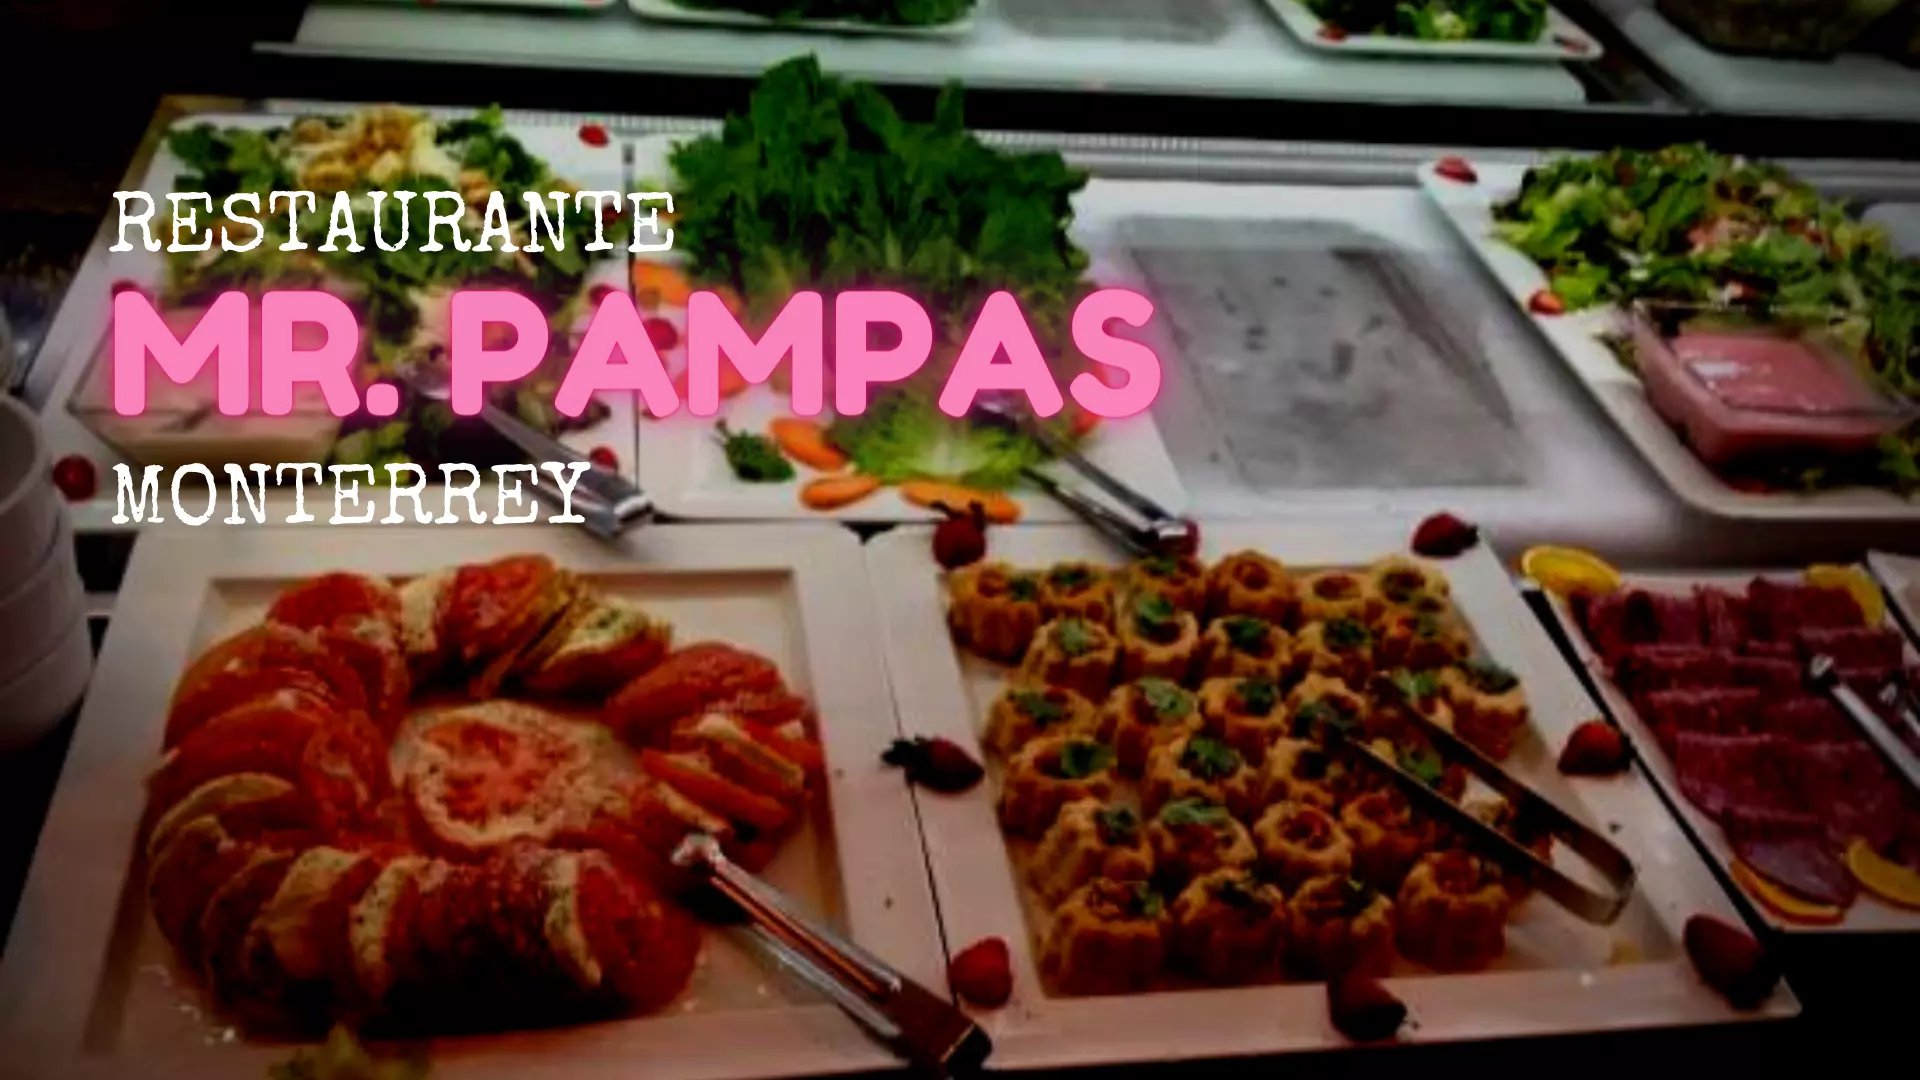 Restaurante Mr. Pampas Contry - Buffete libre